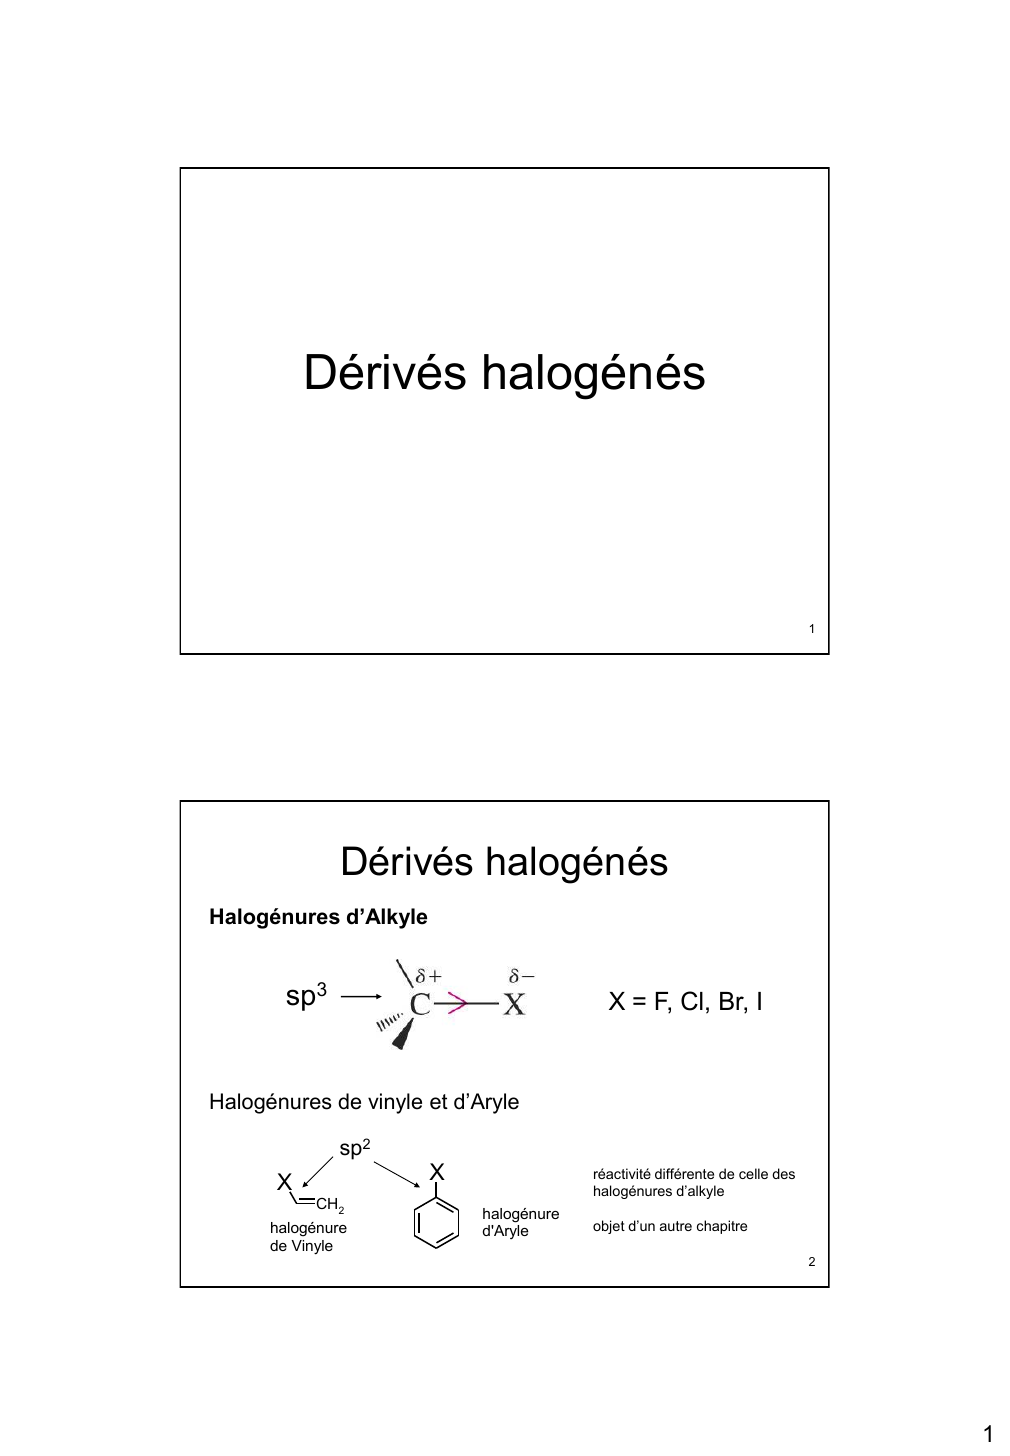 Prévisualisation du document Dérivés halogénés1Dérivés halogénésHalogénures d'Alkylesp3X = F, Cl, Br, IHalogénures de